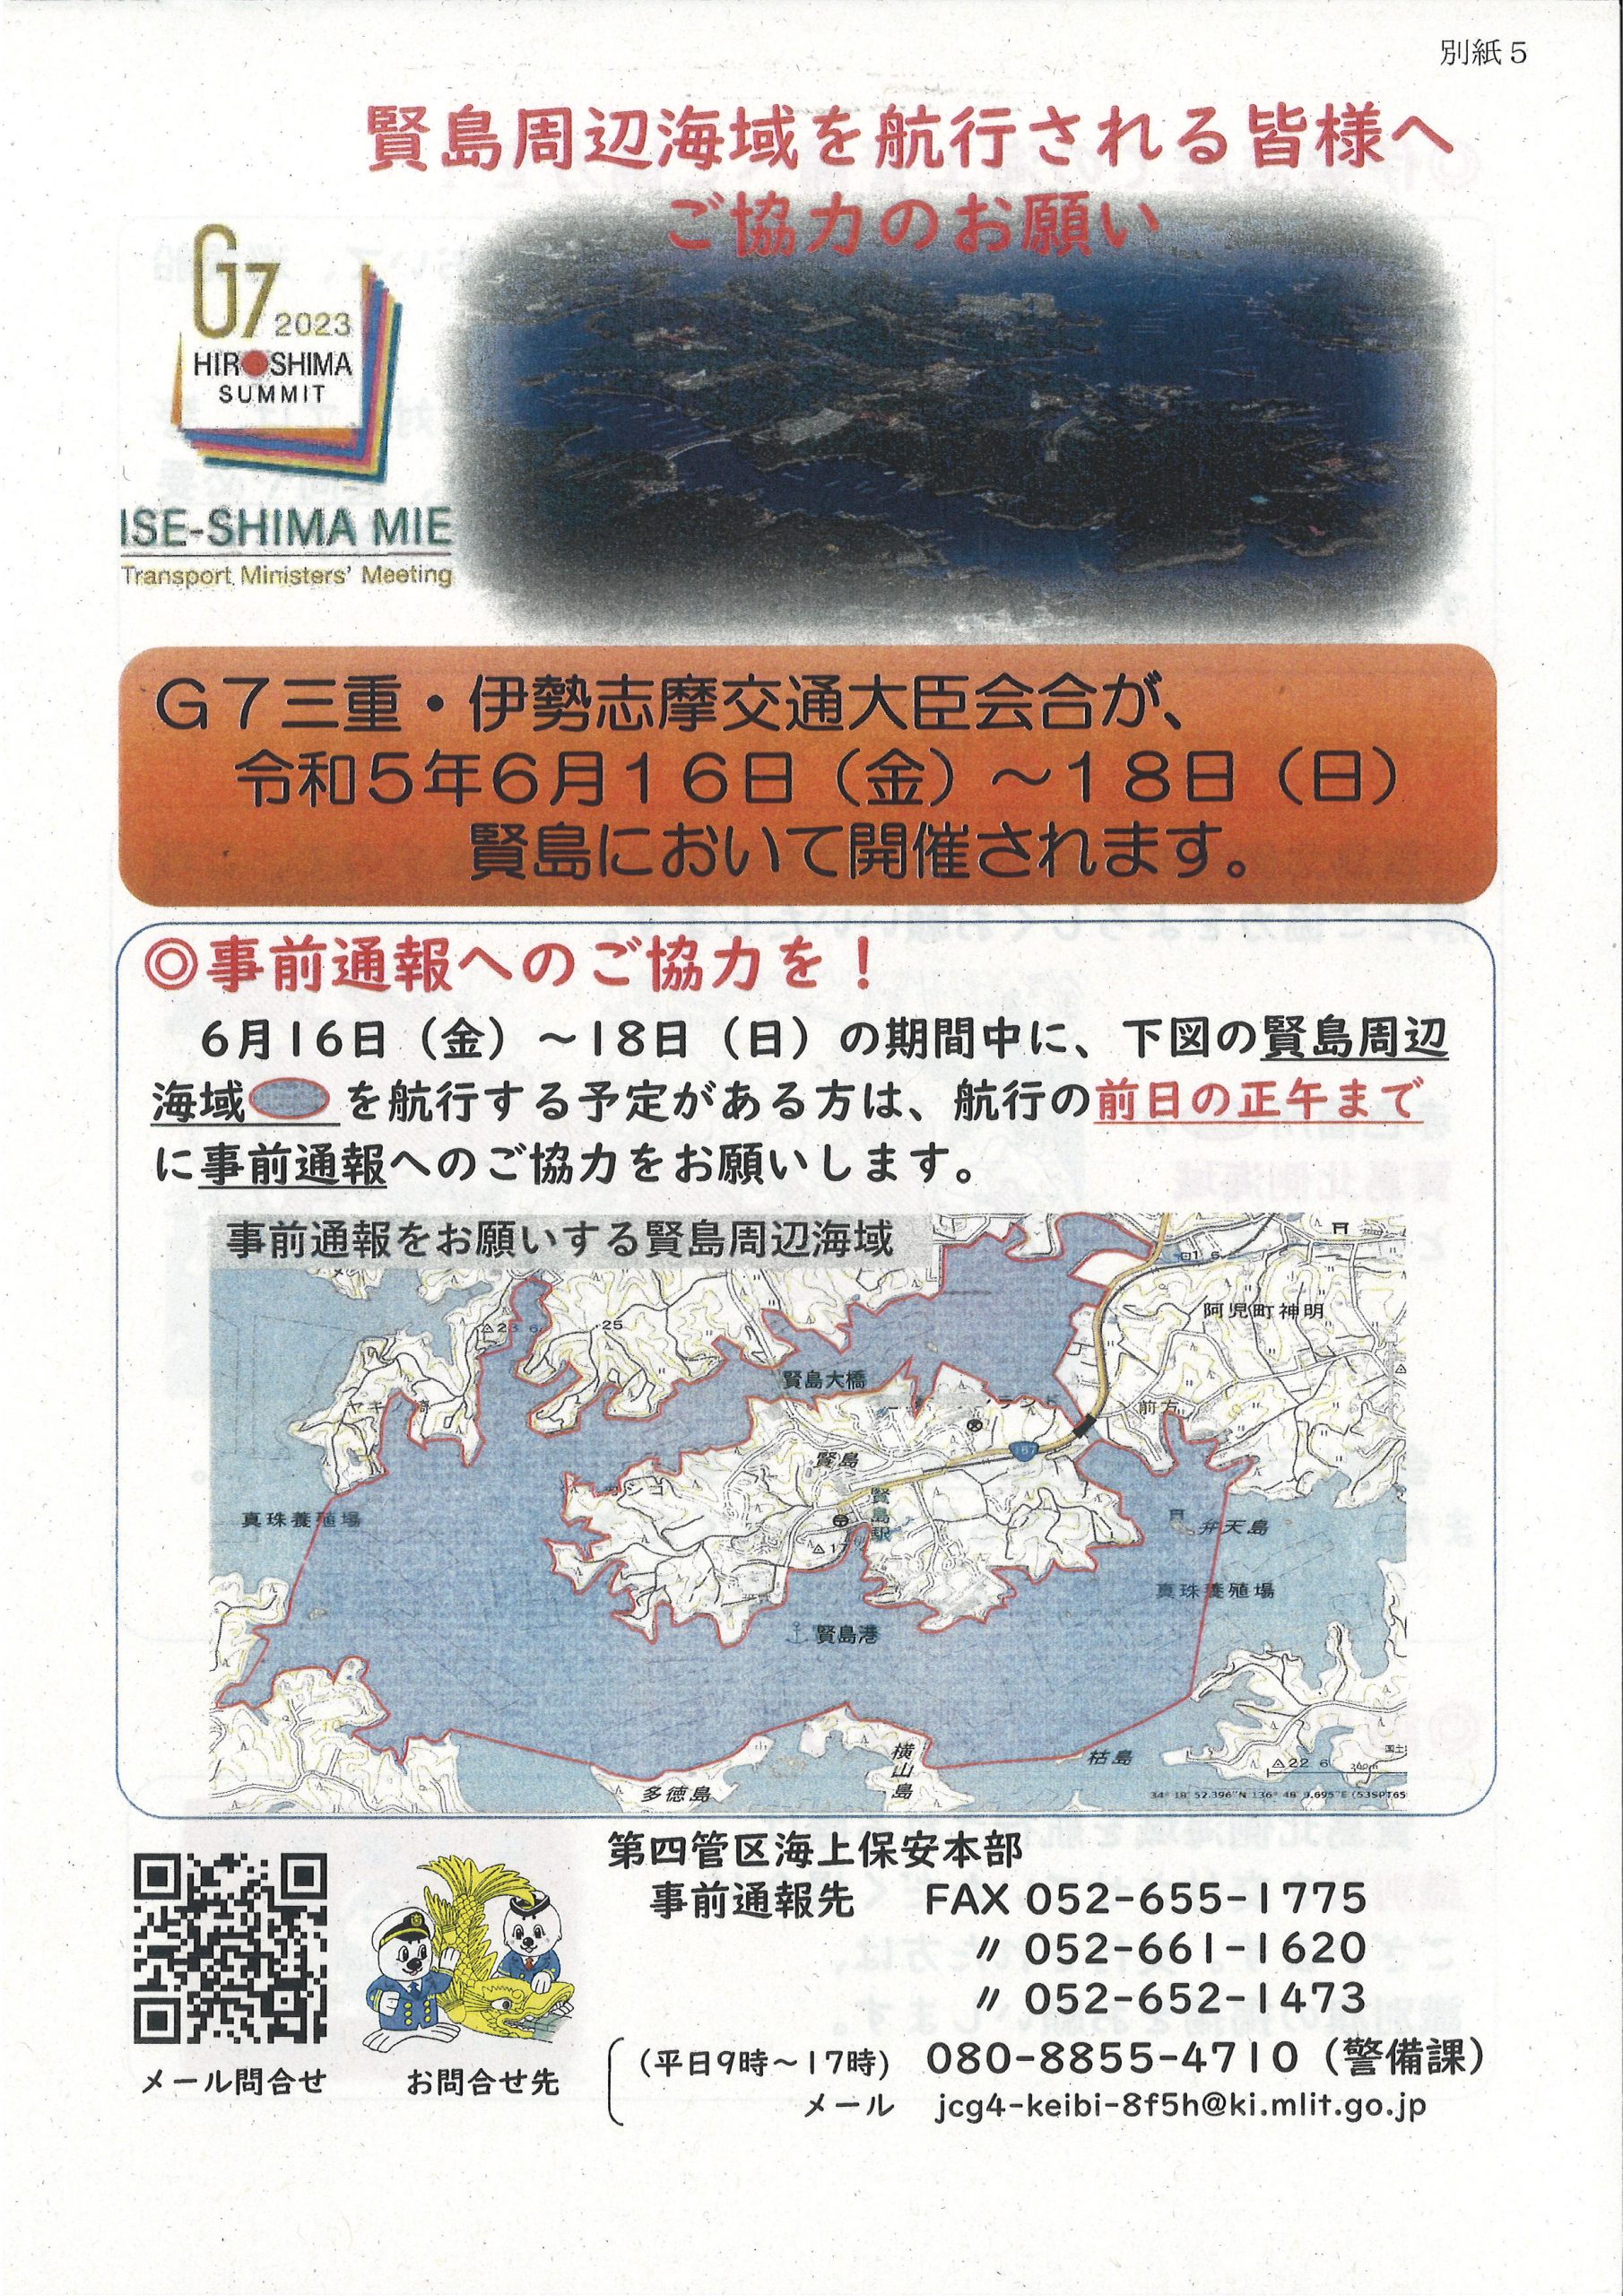 G7三重・伊勢志摩交通大臣会合に伴う海上警備等のお知らせ